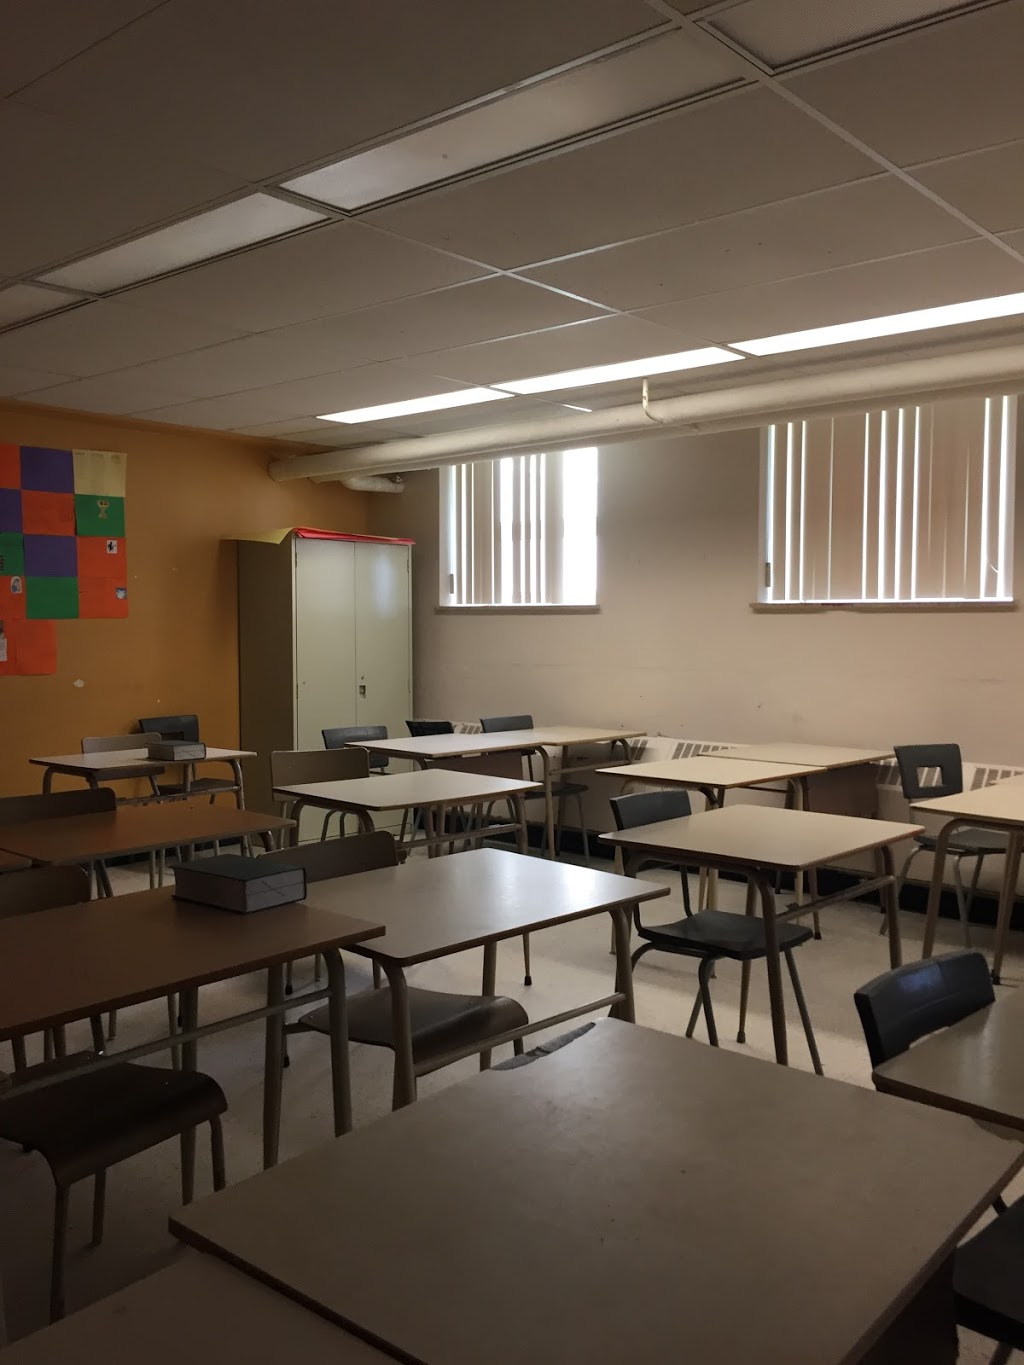 École secondaire Roger-Comtois | school | 158 Boulevard des Étudiants, Québec, QC G2A 1N8, Canada | 41868640406500 OR +1 418-686-4040 ext. 6500